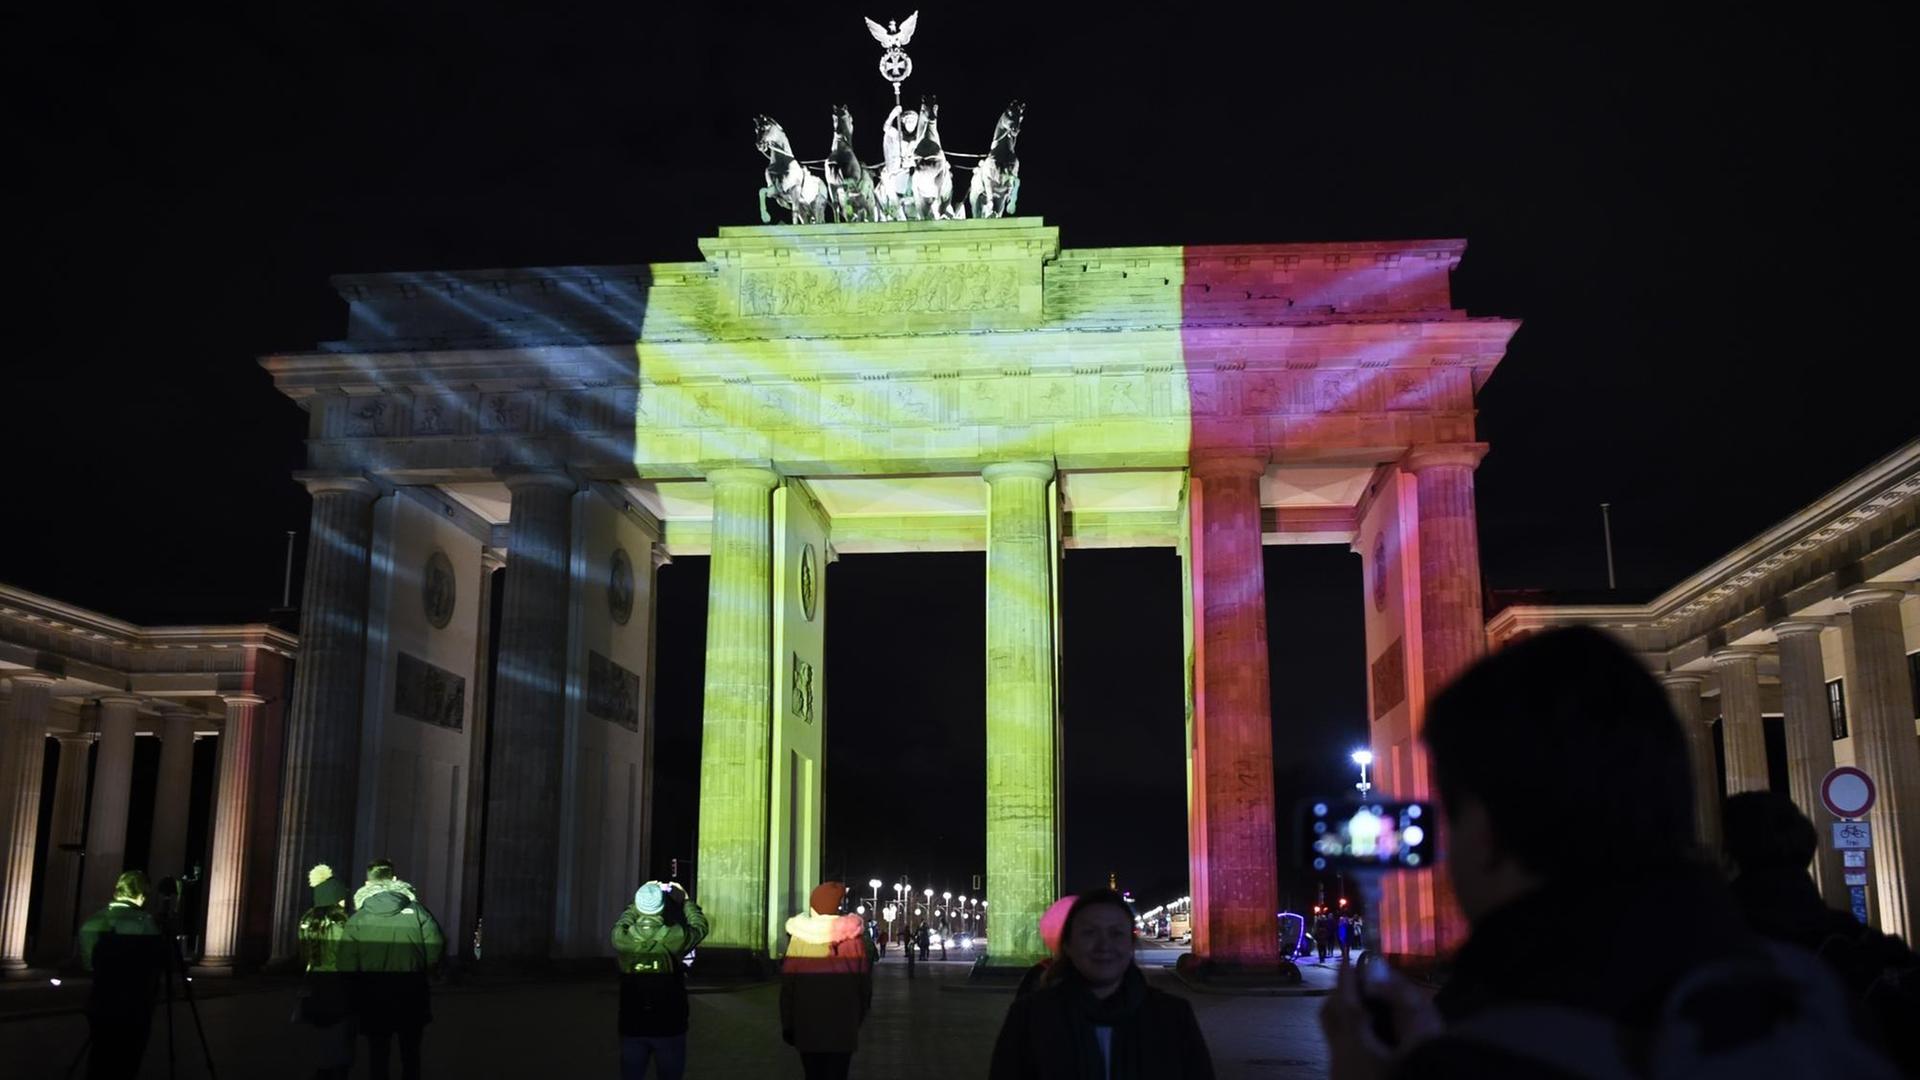 Menschen machen Fotos von dem in den Farben der belgischen Flagge angestrahlten Brandenburger Tor am Abend nach den morgendlichen Anschlägen in Brüssel am 22.03.2016.